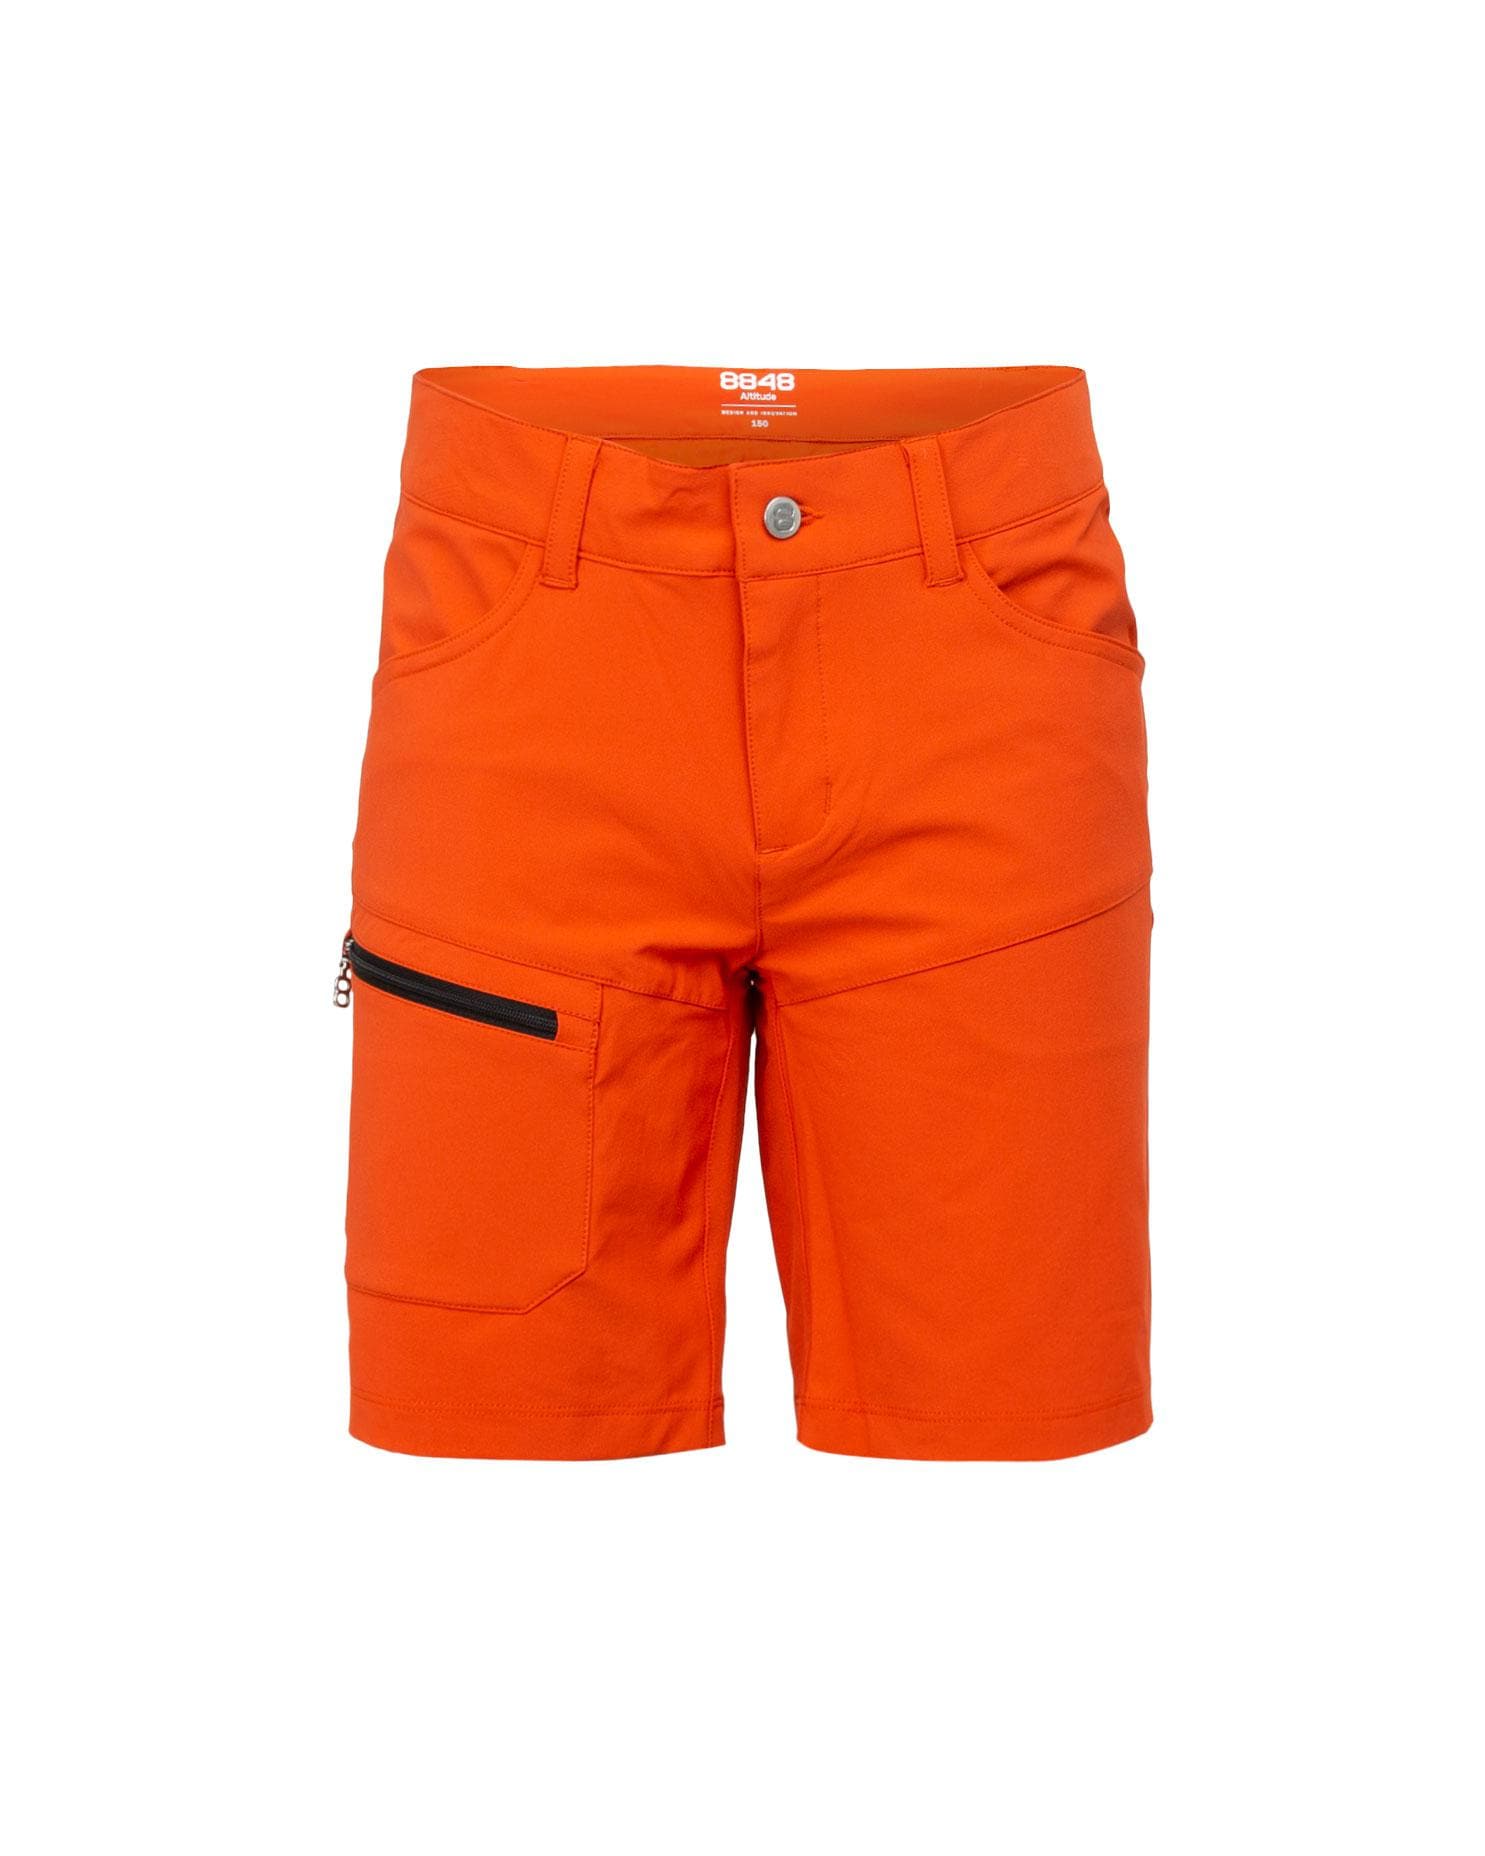 Vanka JR Shorts Chili - Orange Short Kinder